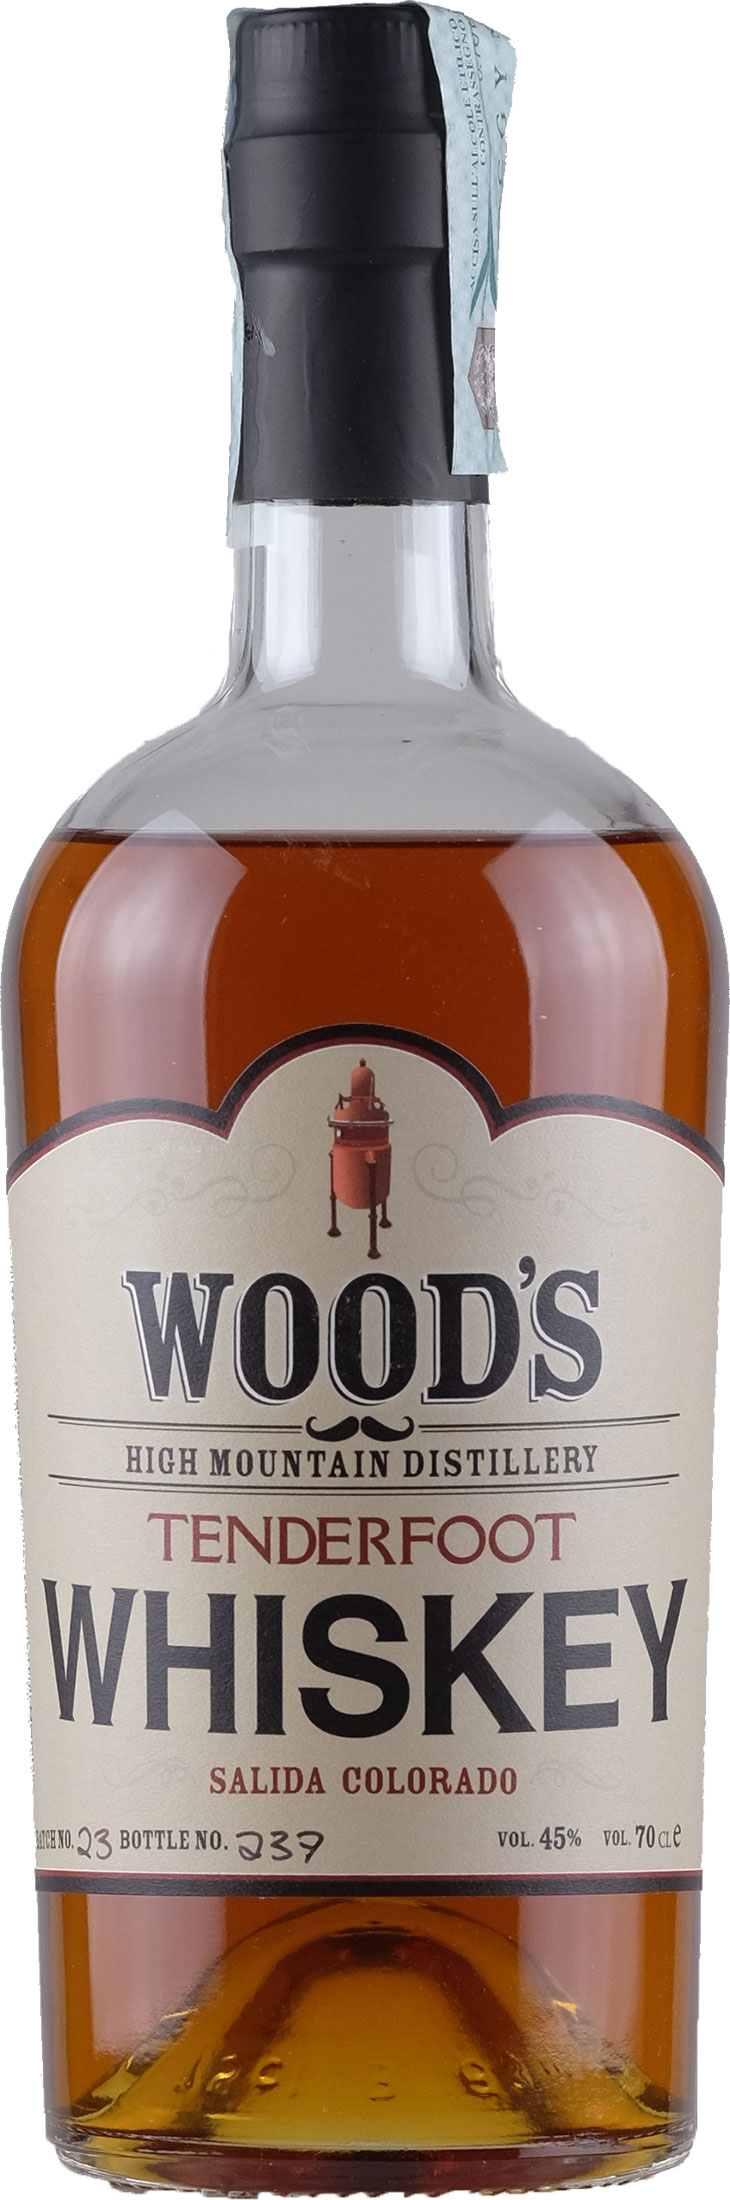 Wood’s Tenderfoot Whiskey